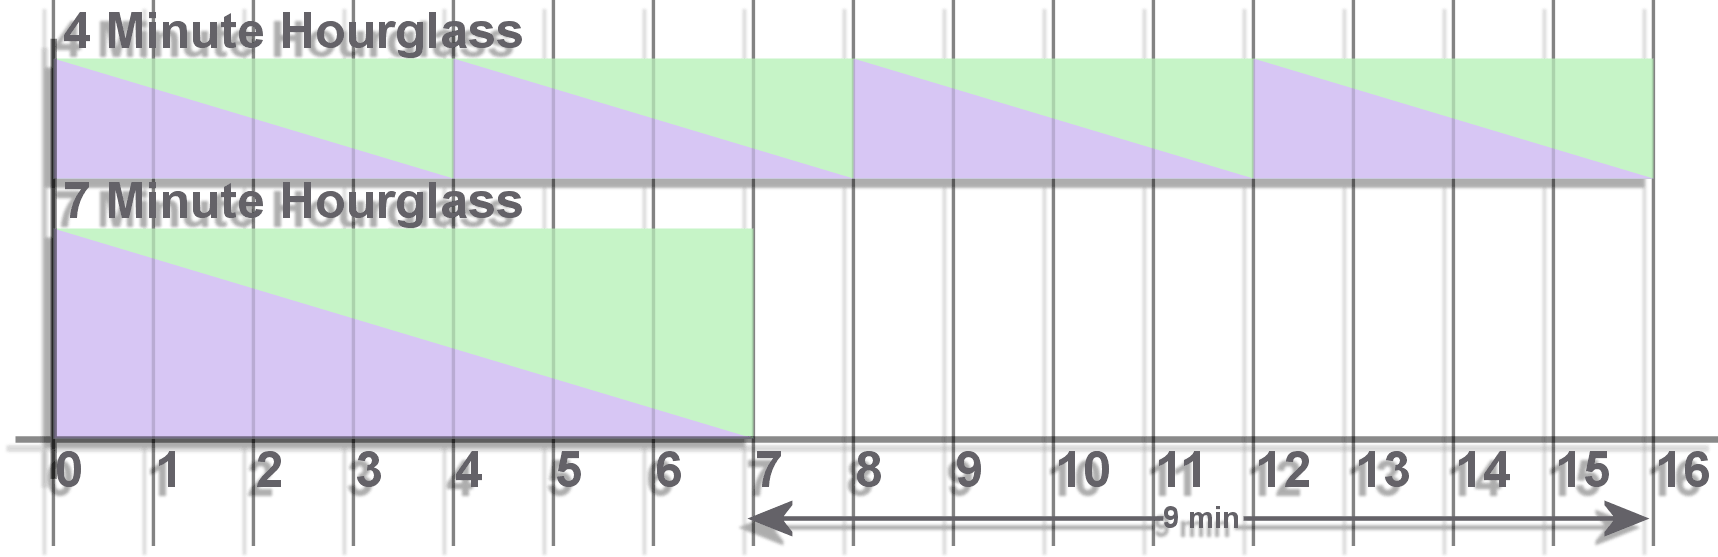 hourglass flipping chart 1